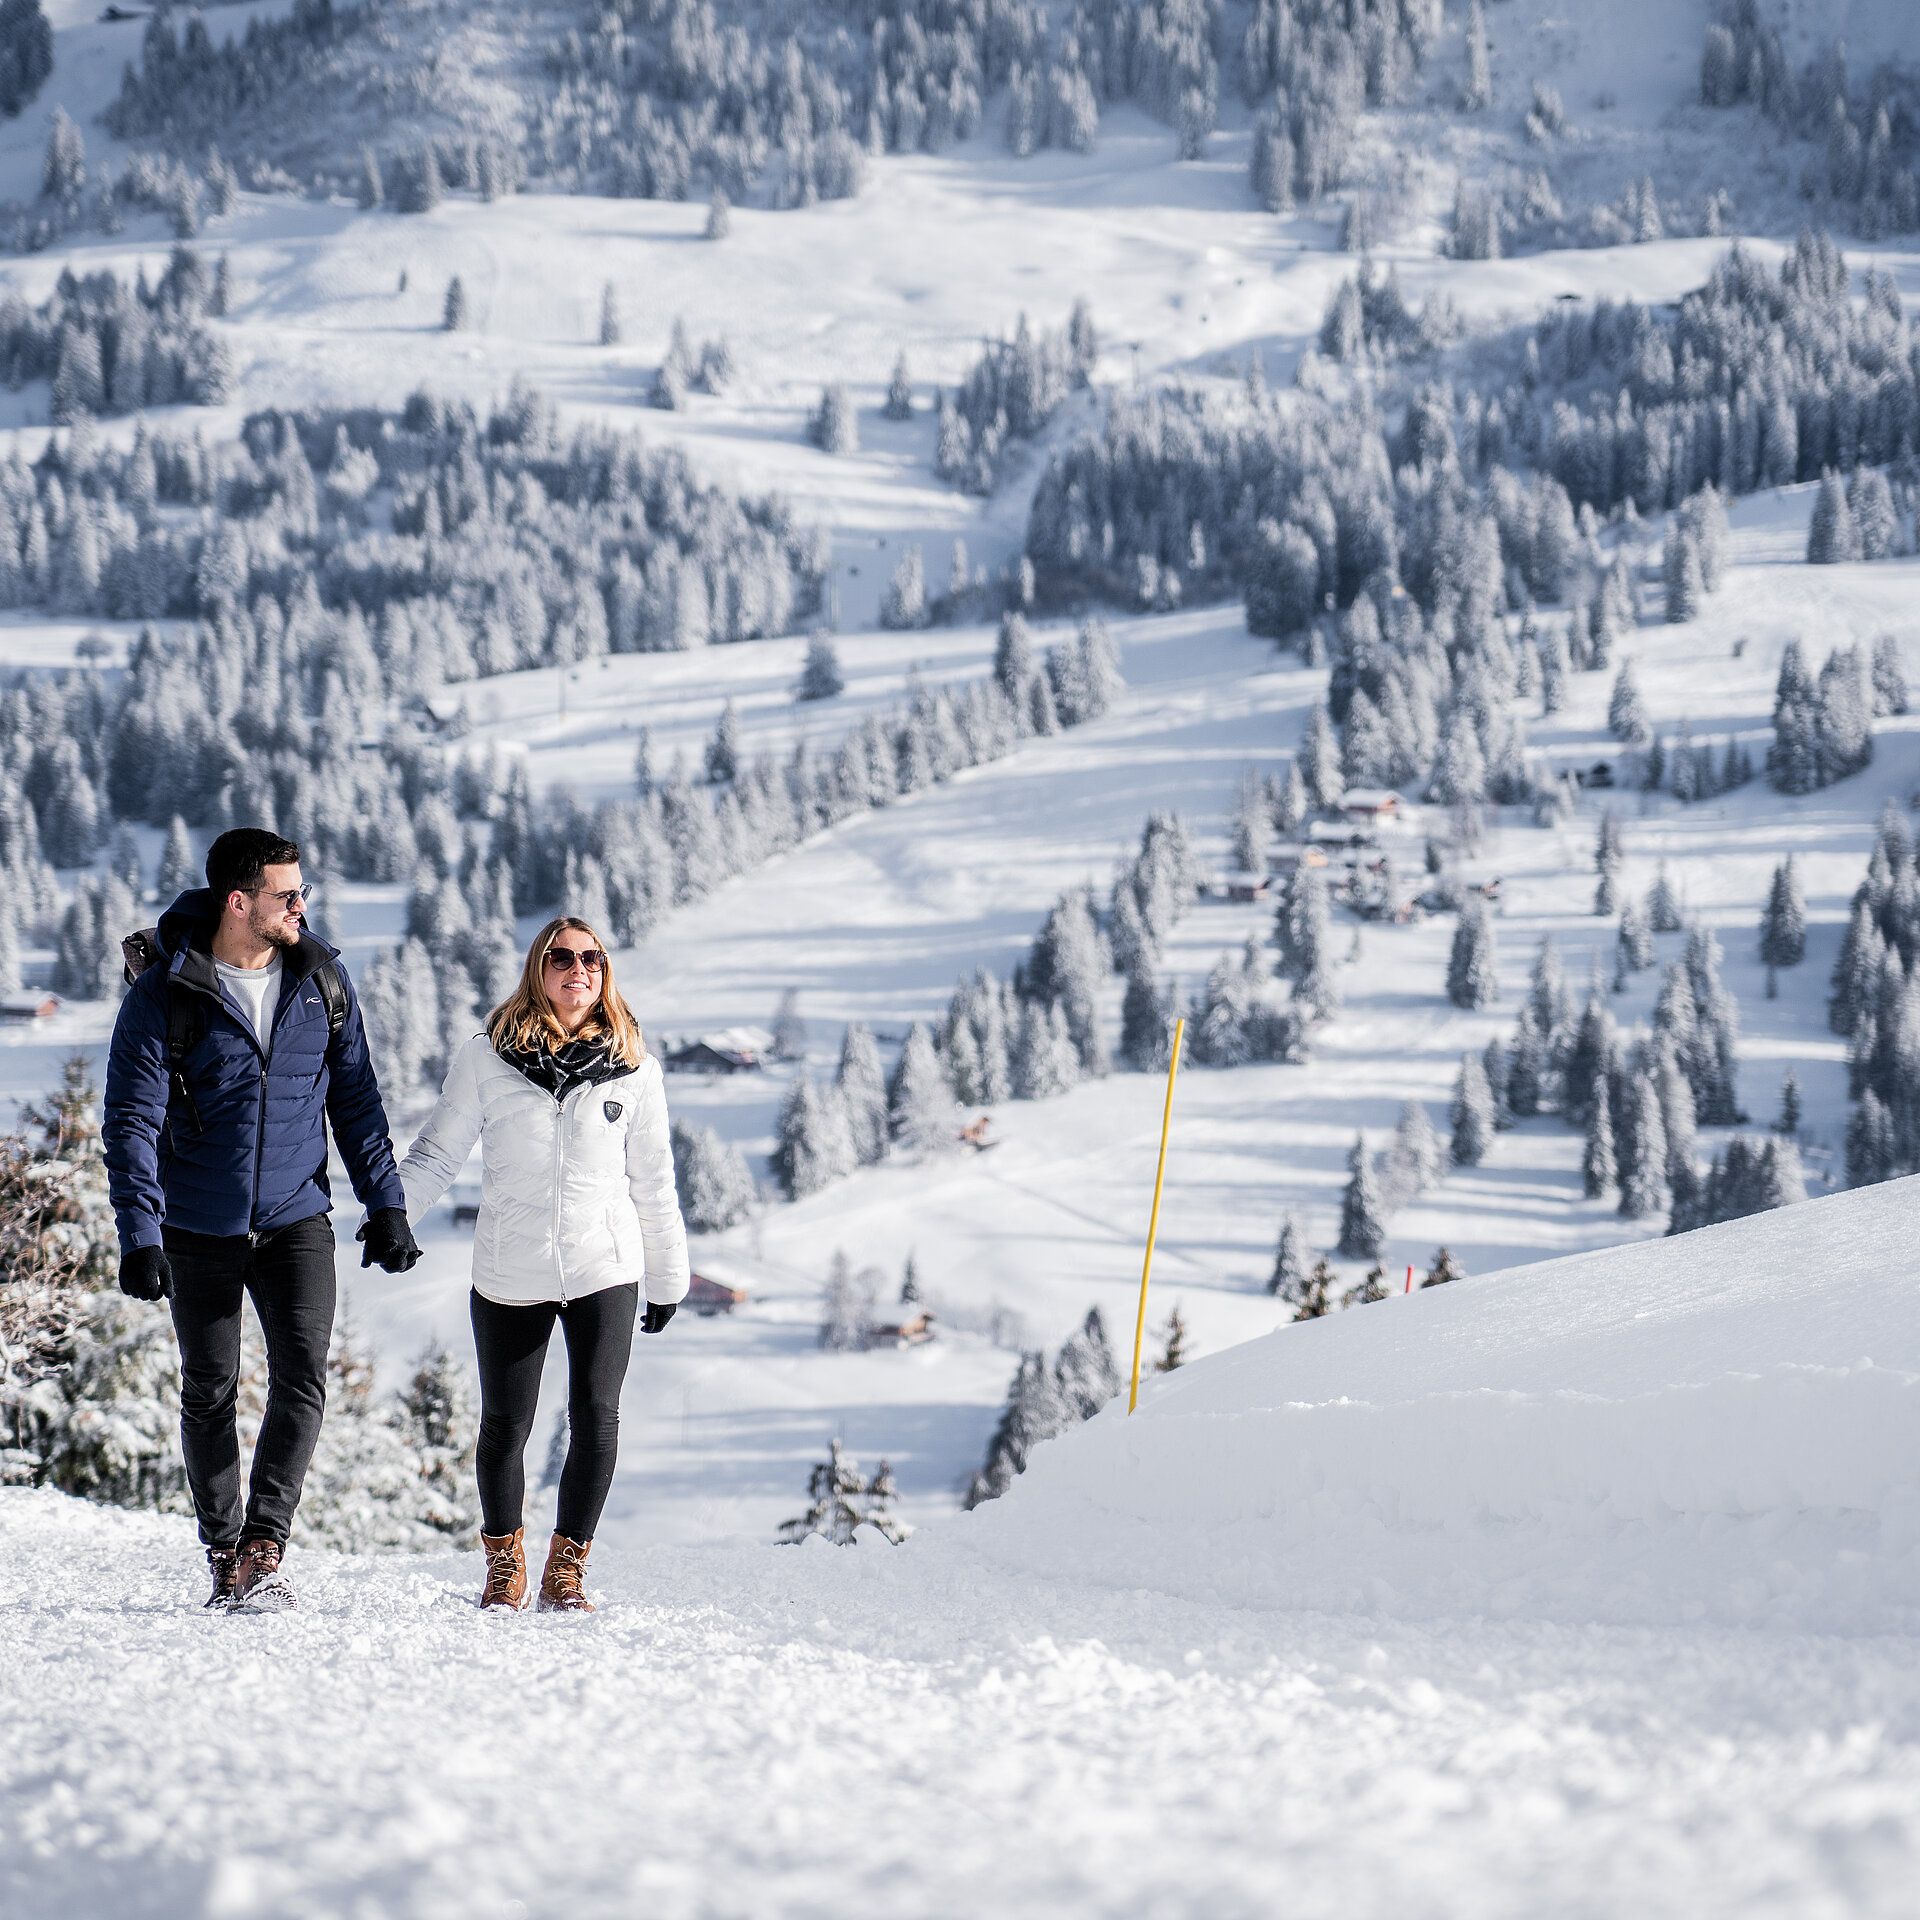 <p>Zwei Personen wandern auf einem präparierten Winterwanderweg der ansteigt. Er trägt eine blaue Winterjacke und sie ist in eine weisse Daunenjacke gehüllt. Beide tragen schwarze Hosen. Hinter ihnen sieht man verschneite Tannen und Weiden.</p>